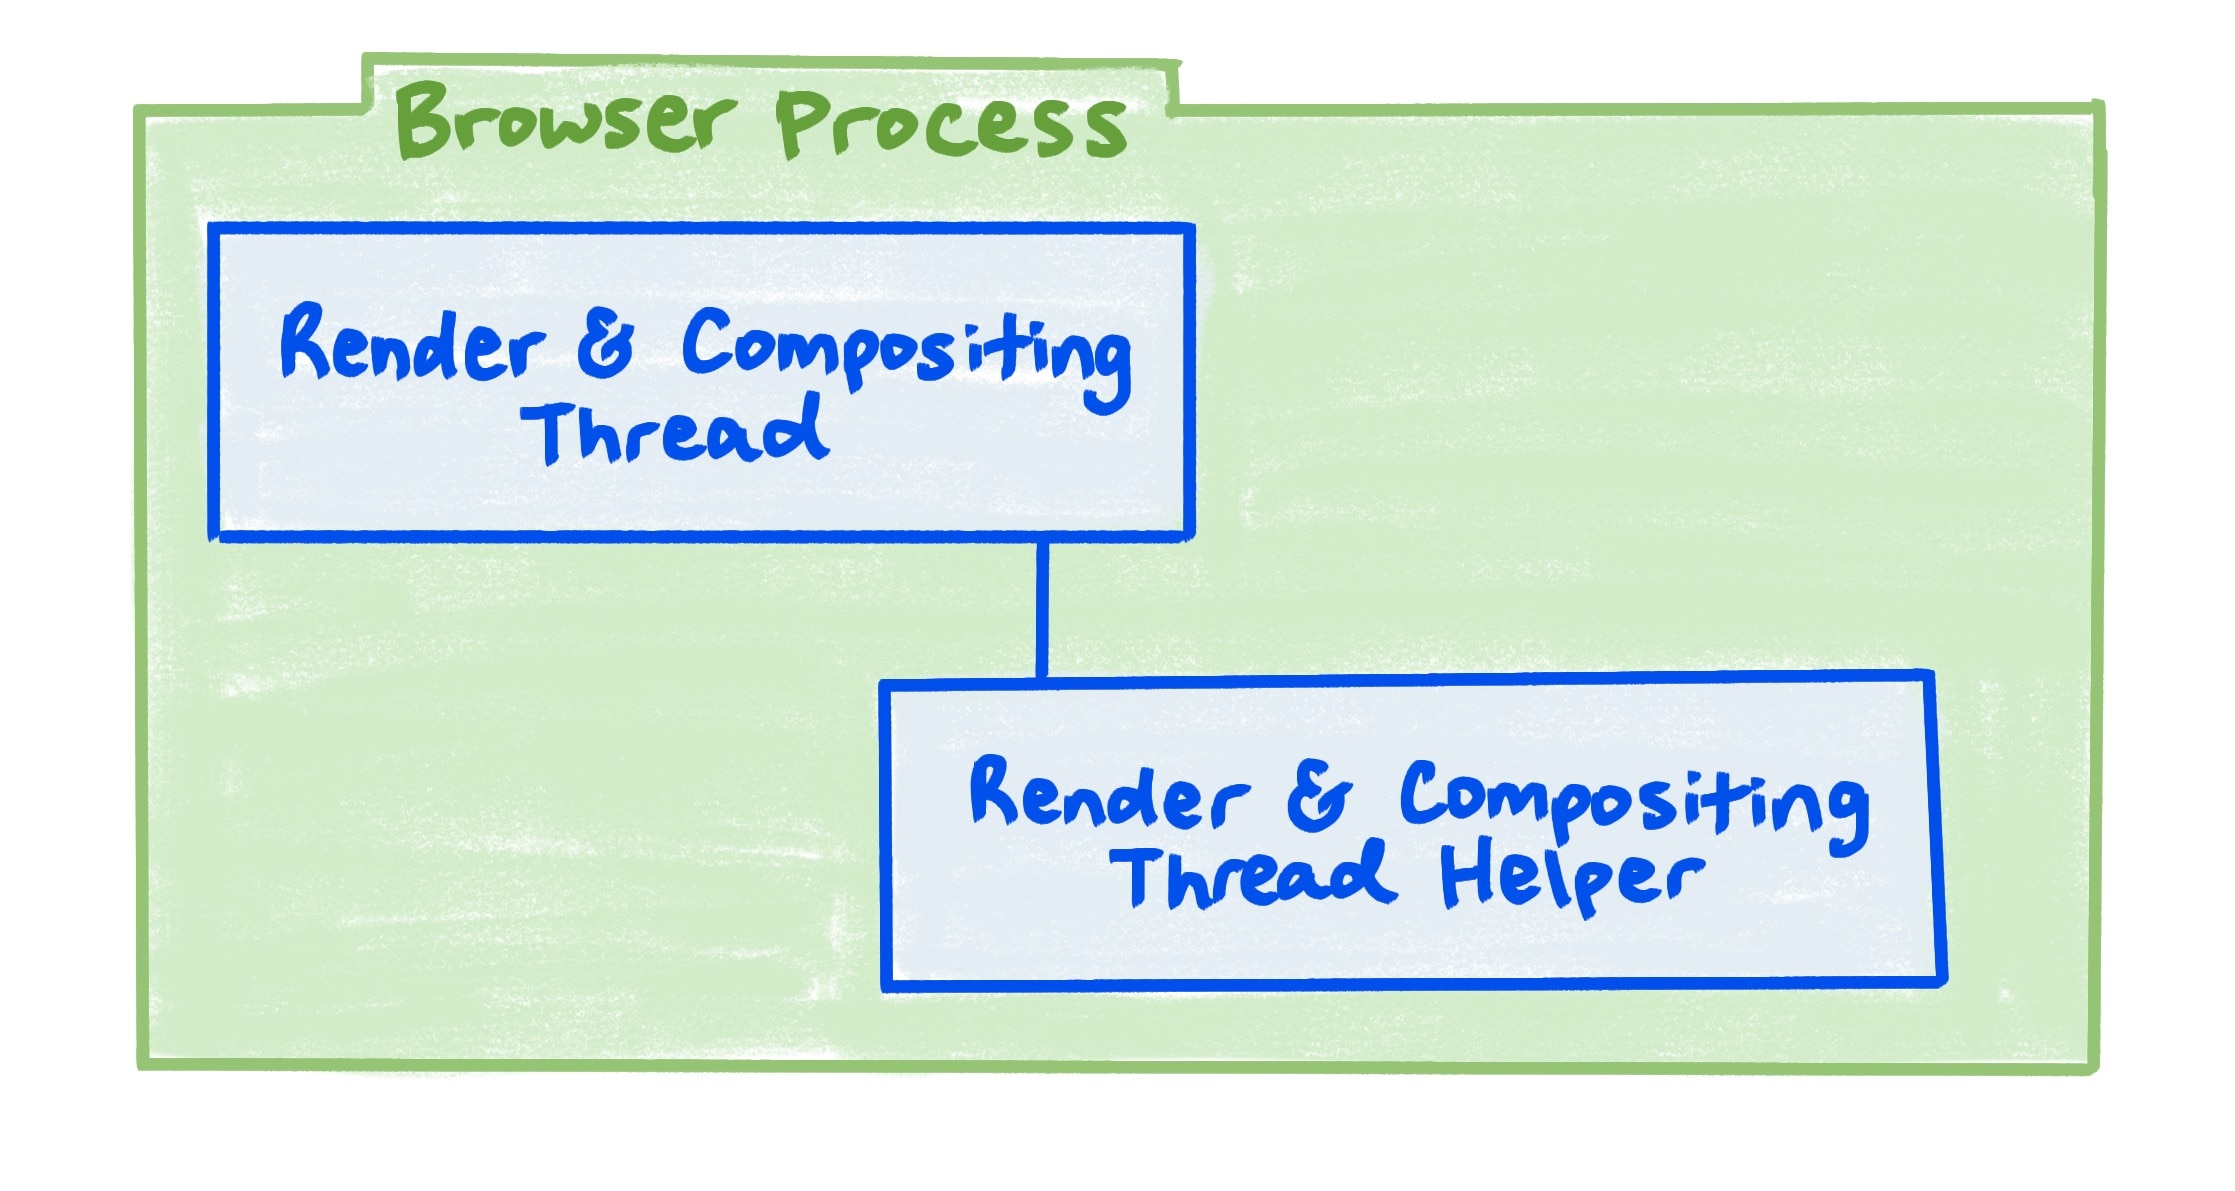 Ein Browser-Prozessdiagramm, das die Beziehung zwischen dem Rendering- und dem Aufbau-Thread und dem Helper für Rendering- und Compositing-Threads zeigt.